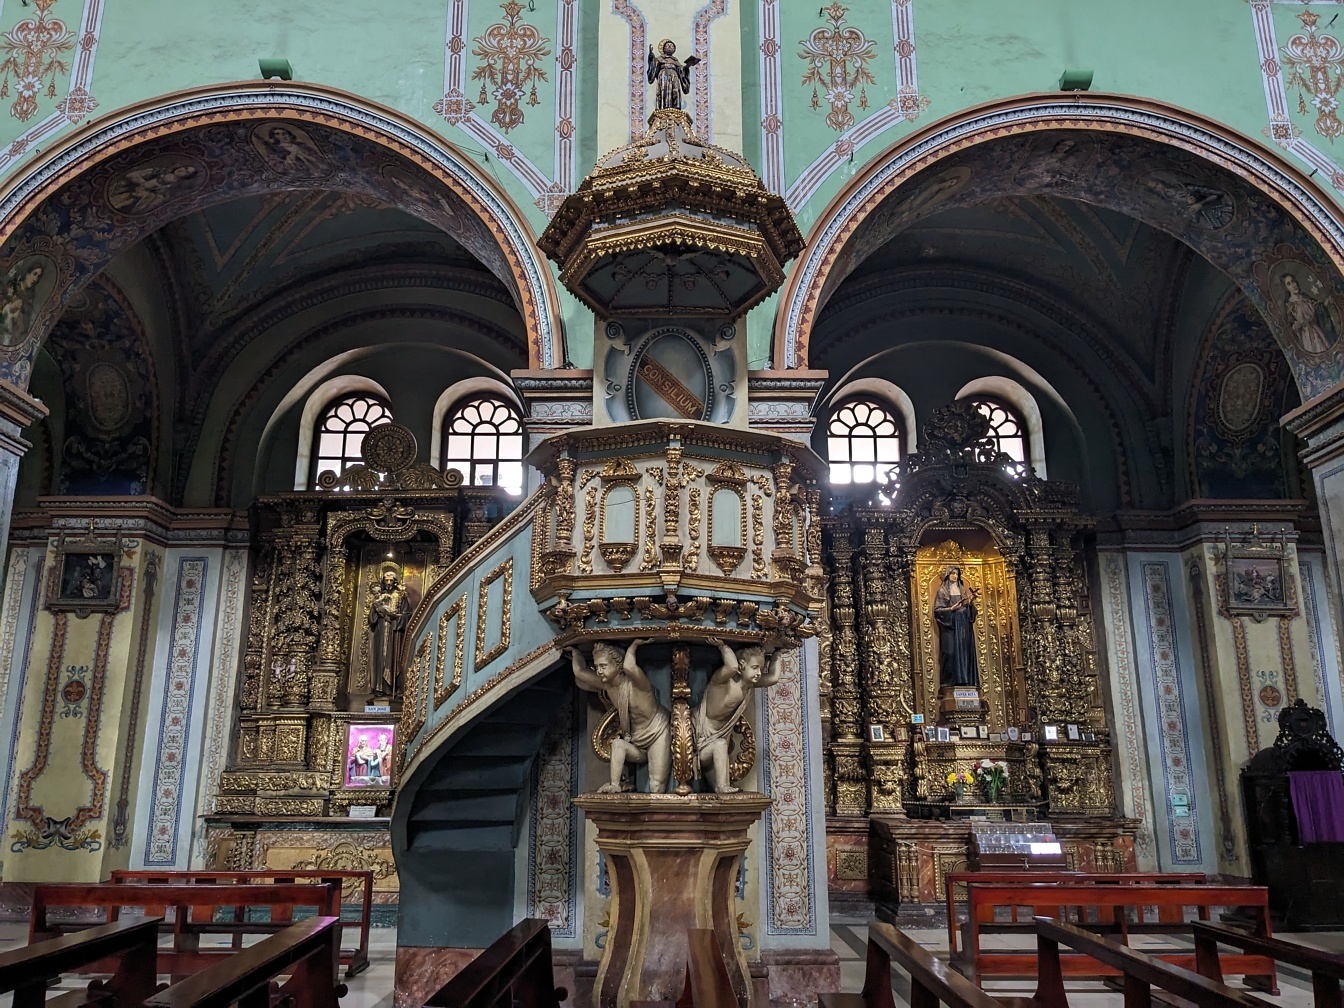 Interiør av romersk-katolsk kirke med utsmykkede vindeltrapp i barokkstil